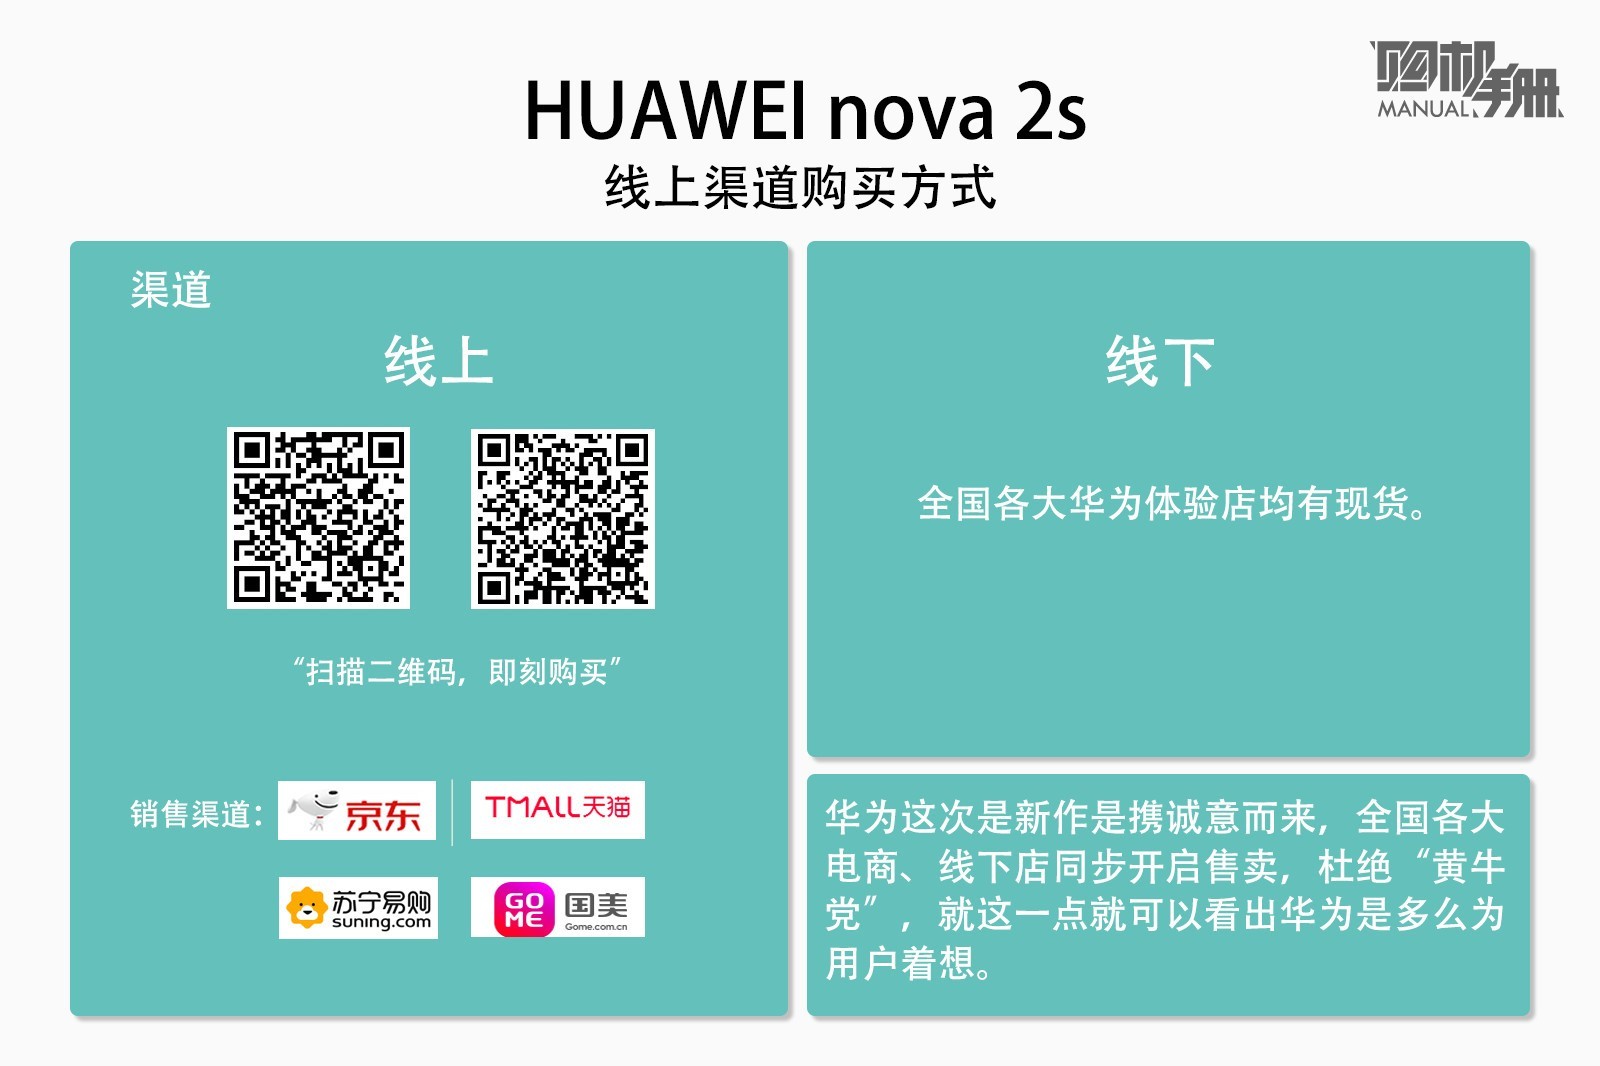 怎么拍都很漂亮 HUAWEI nova 2购买指南